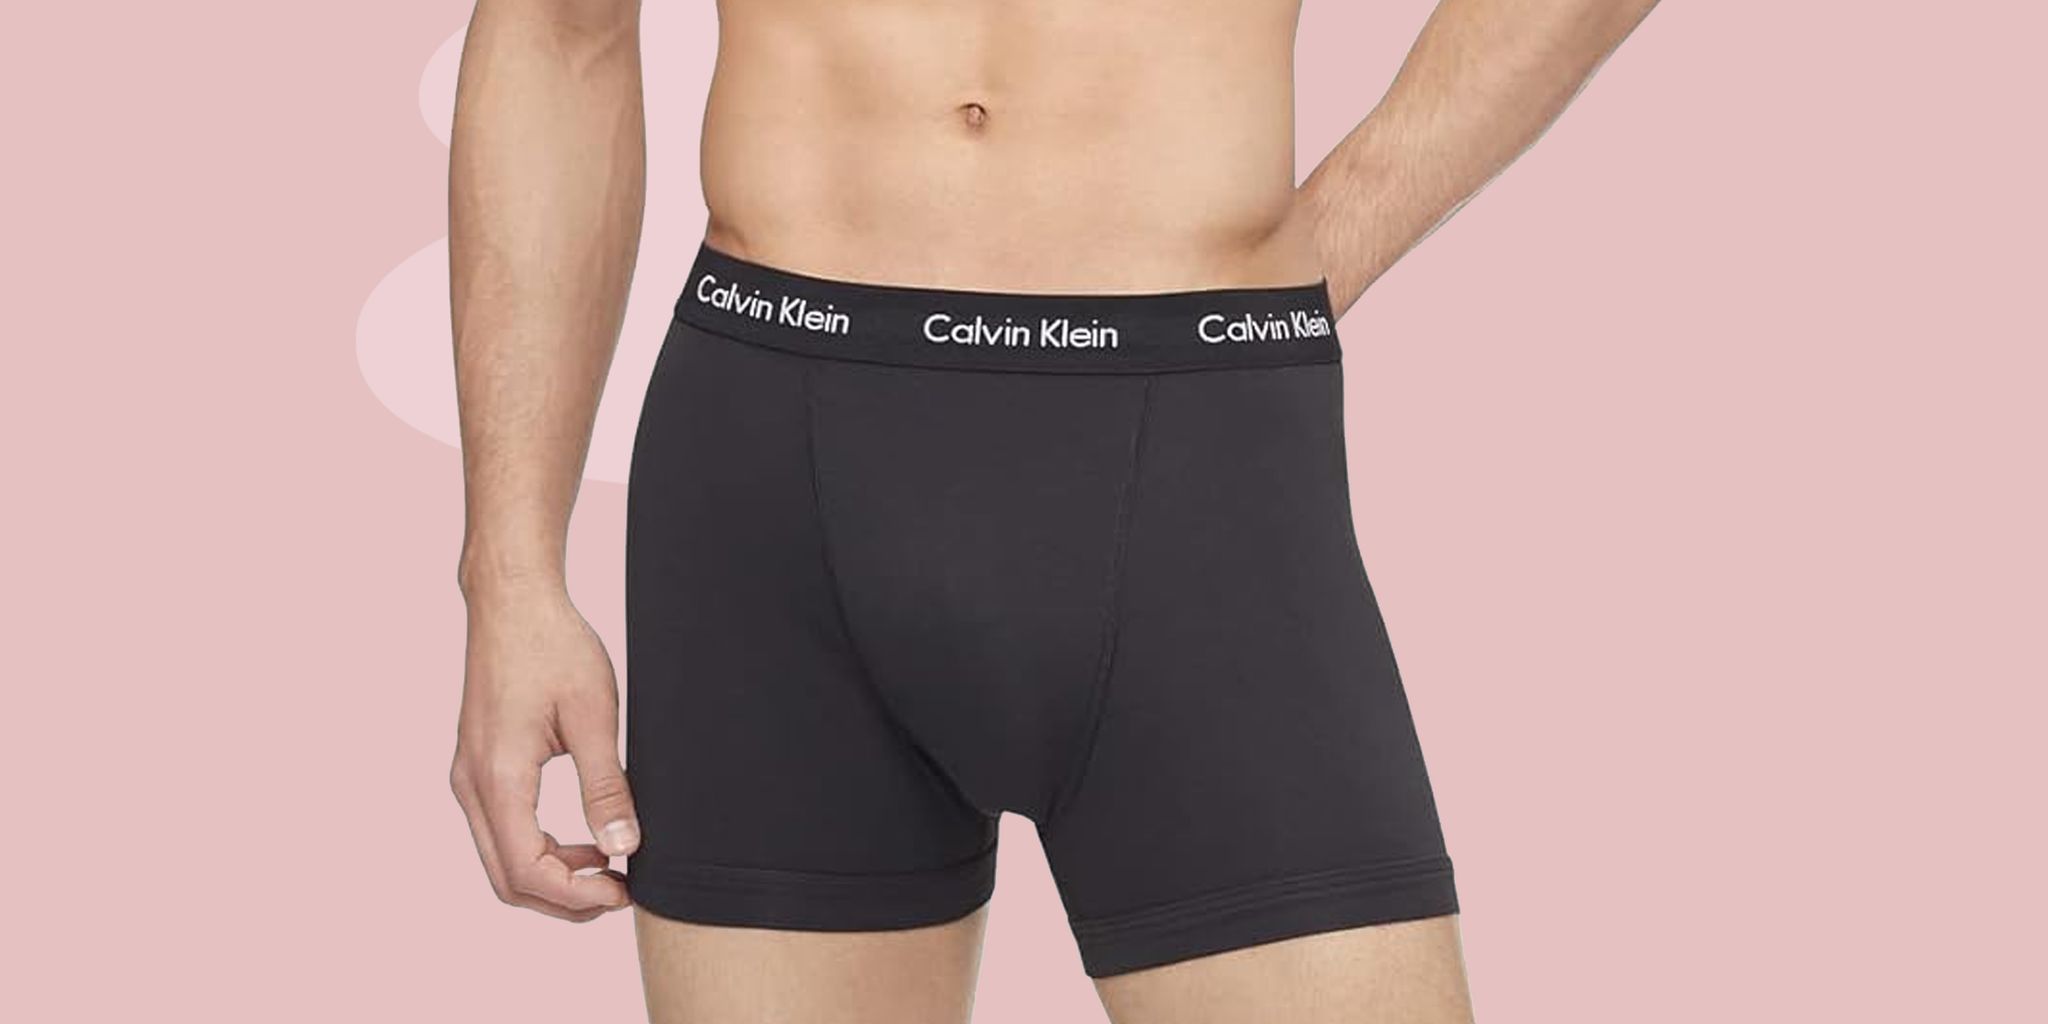 calvin klein underwearThe Best Inexpensive Online Clothing Stores